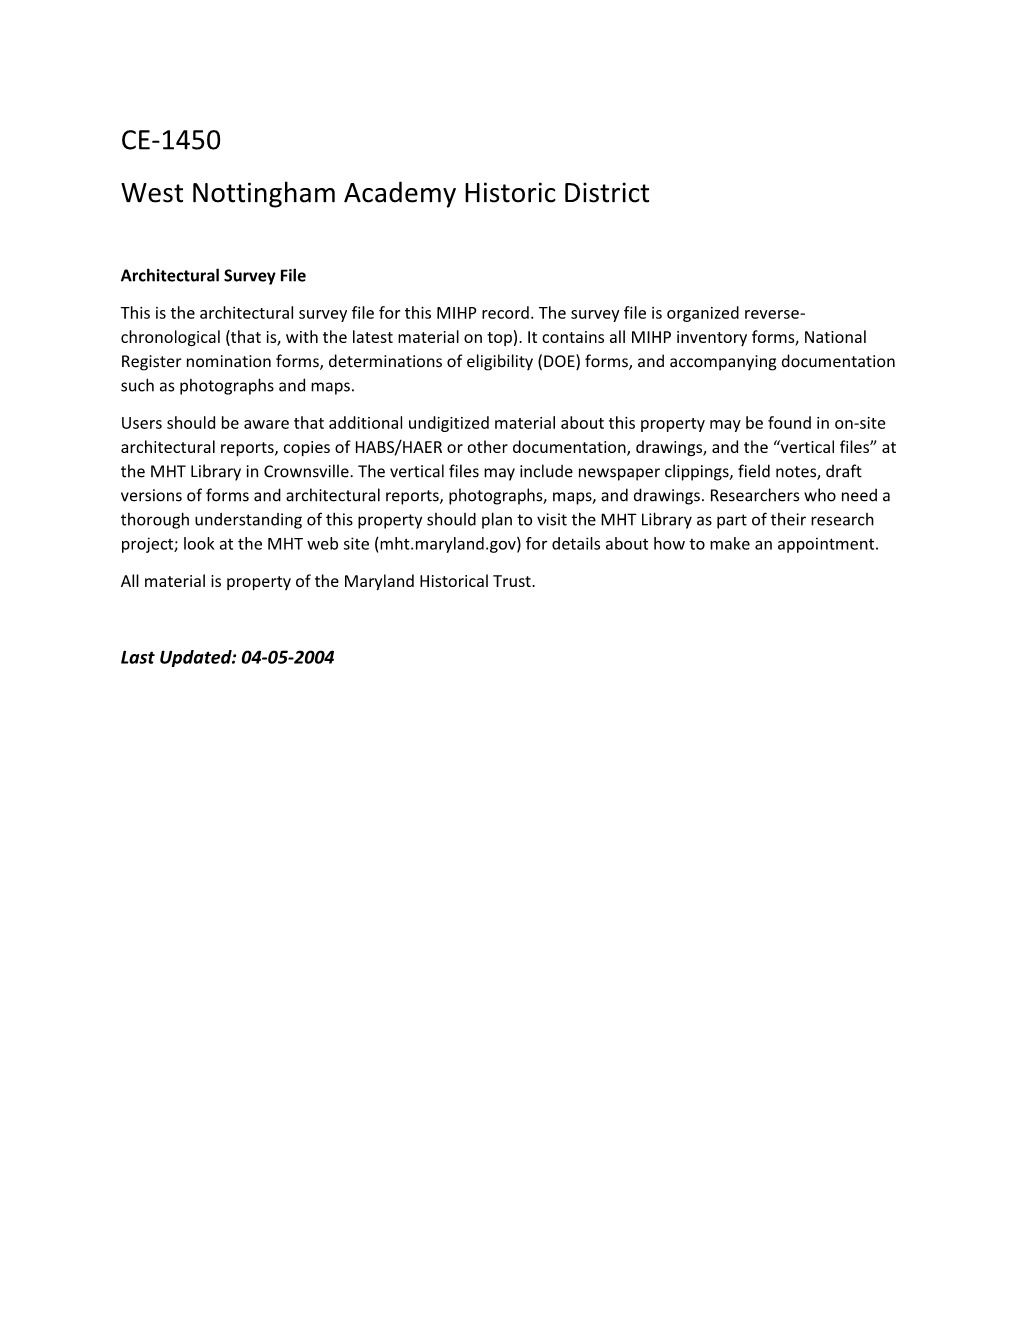 CE-1450 West Nottingham Academy Historic District